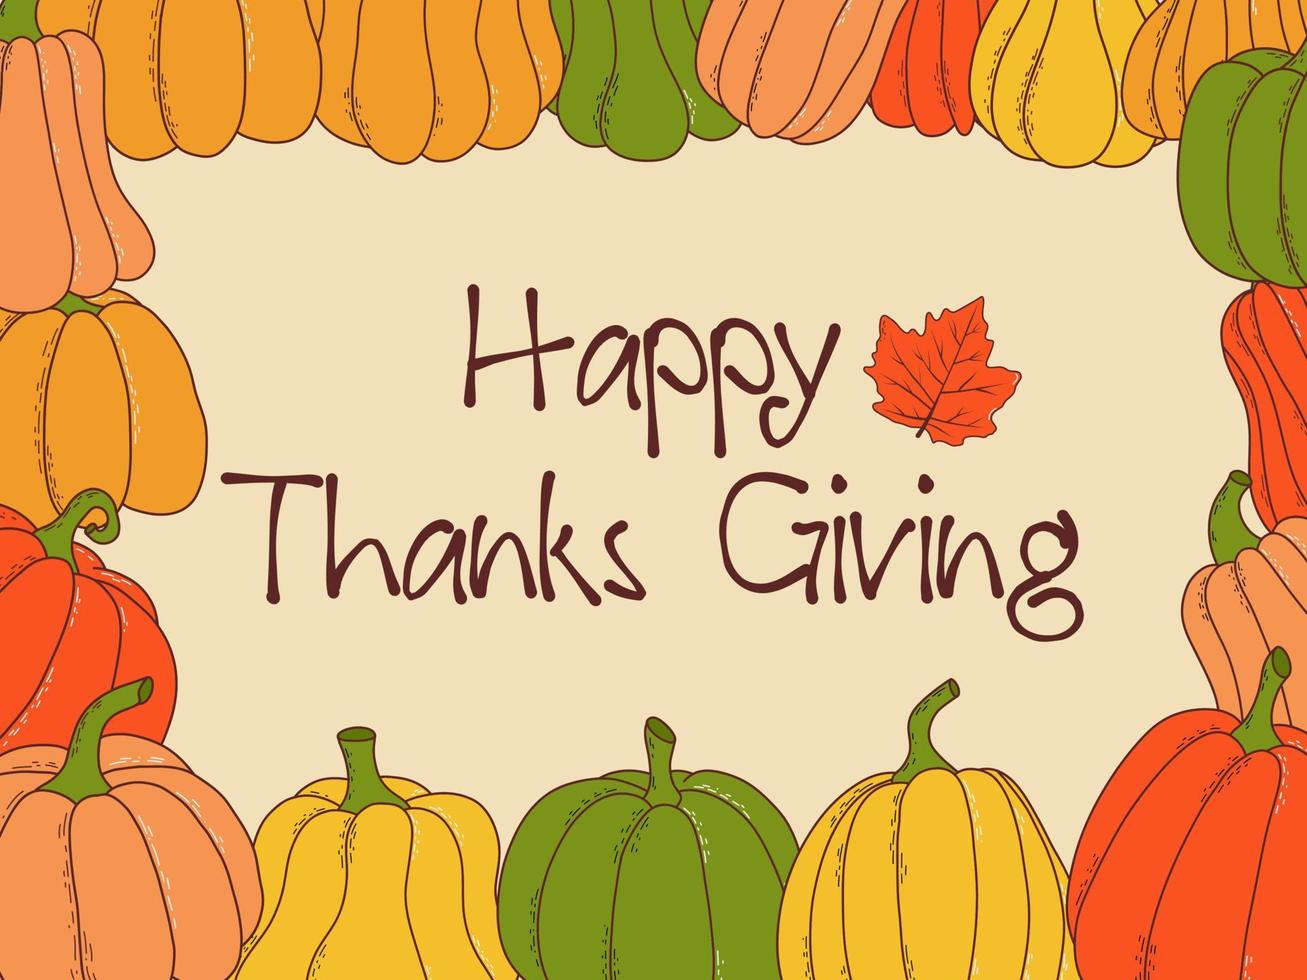 Happy Thanksgiving handgezeichnete Einladung oder Grußkarte. Vektor-Illustration vektor